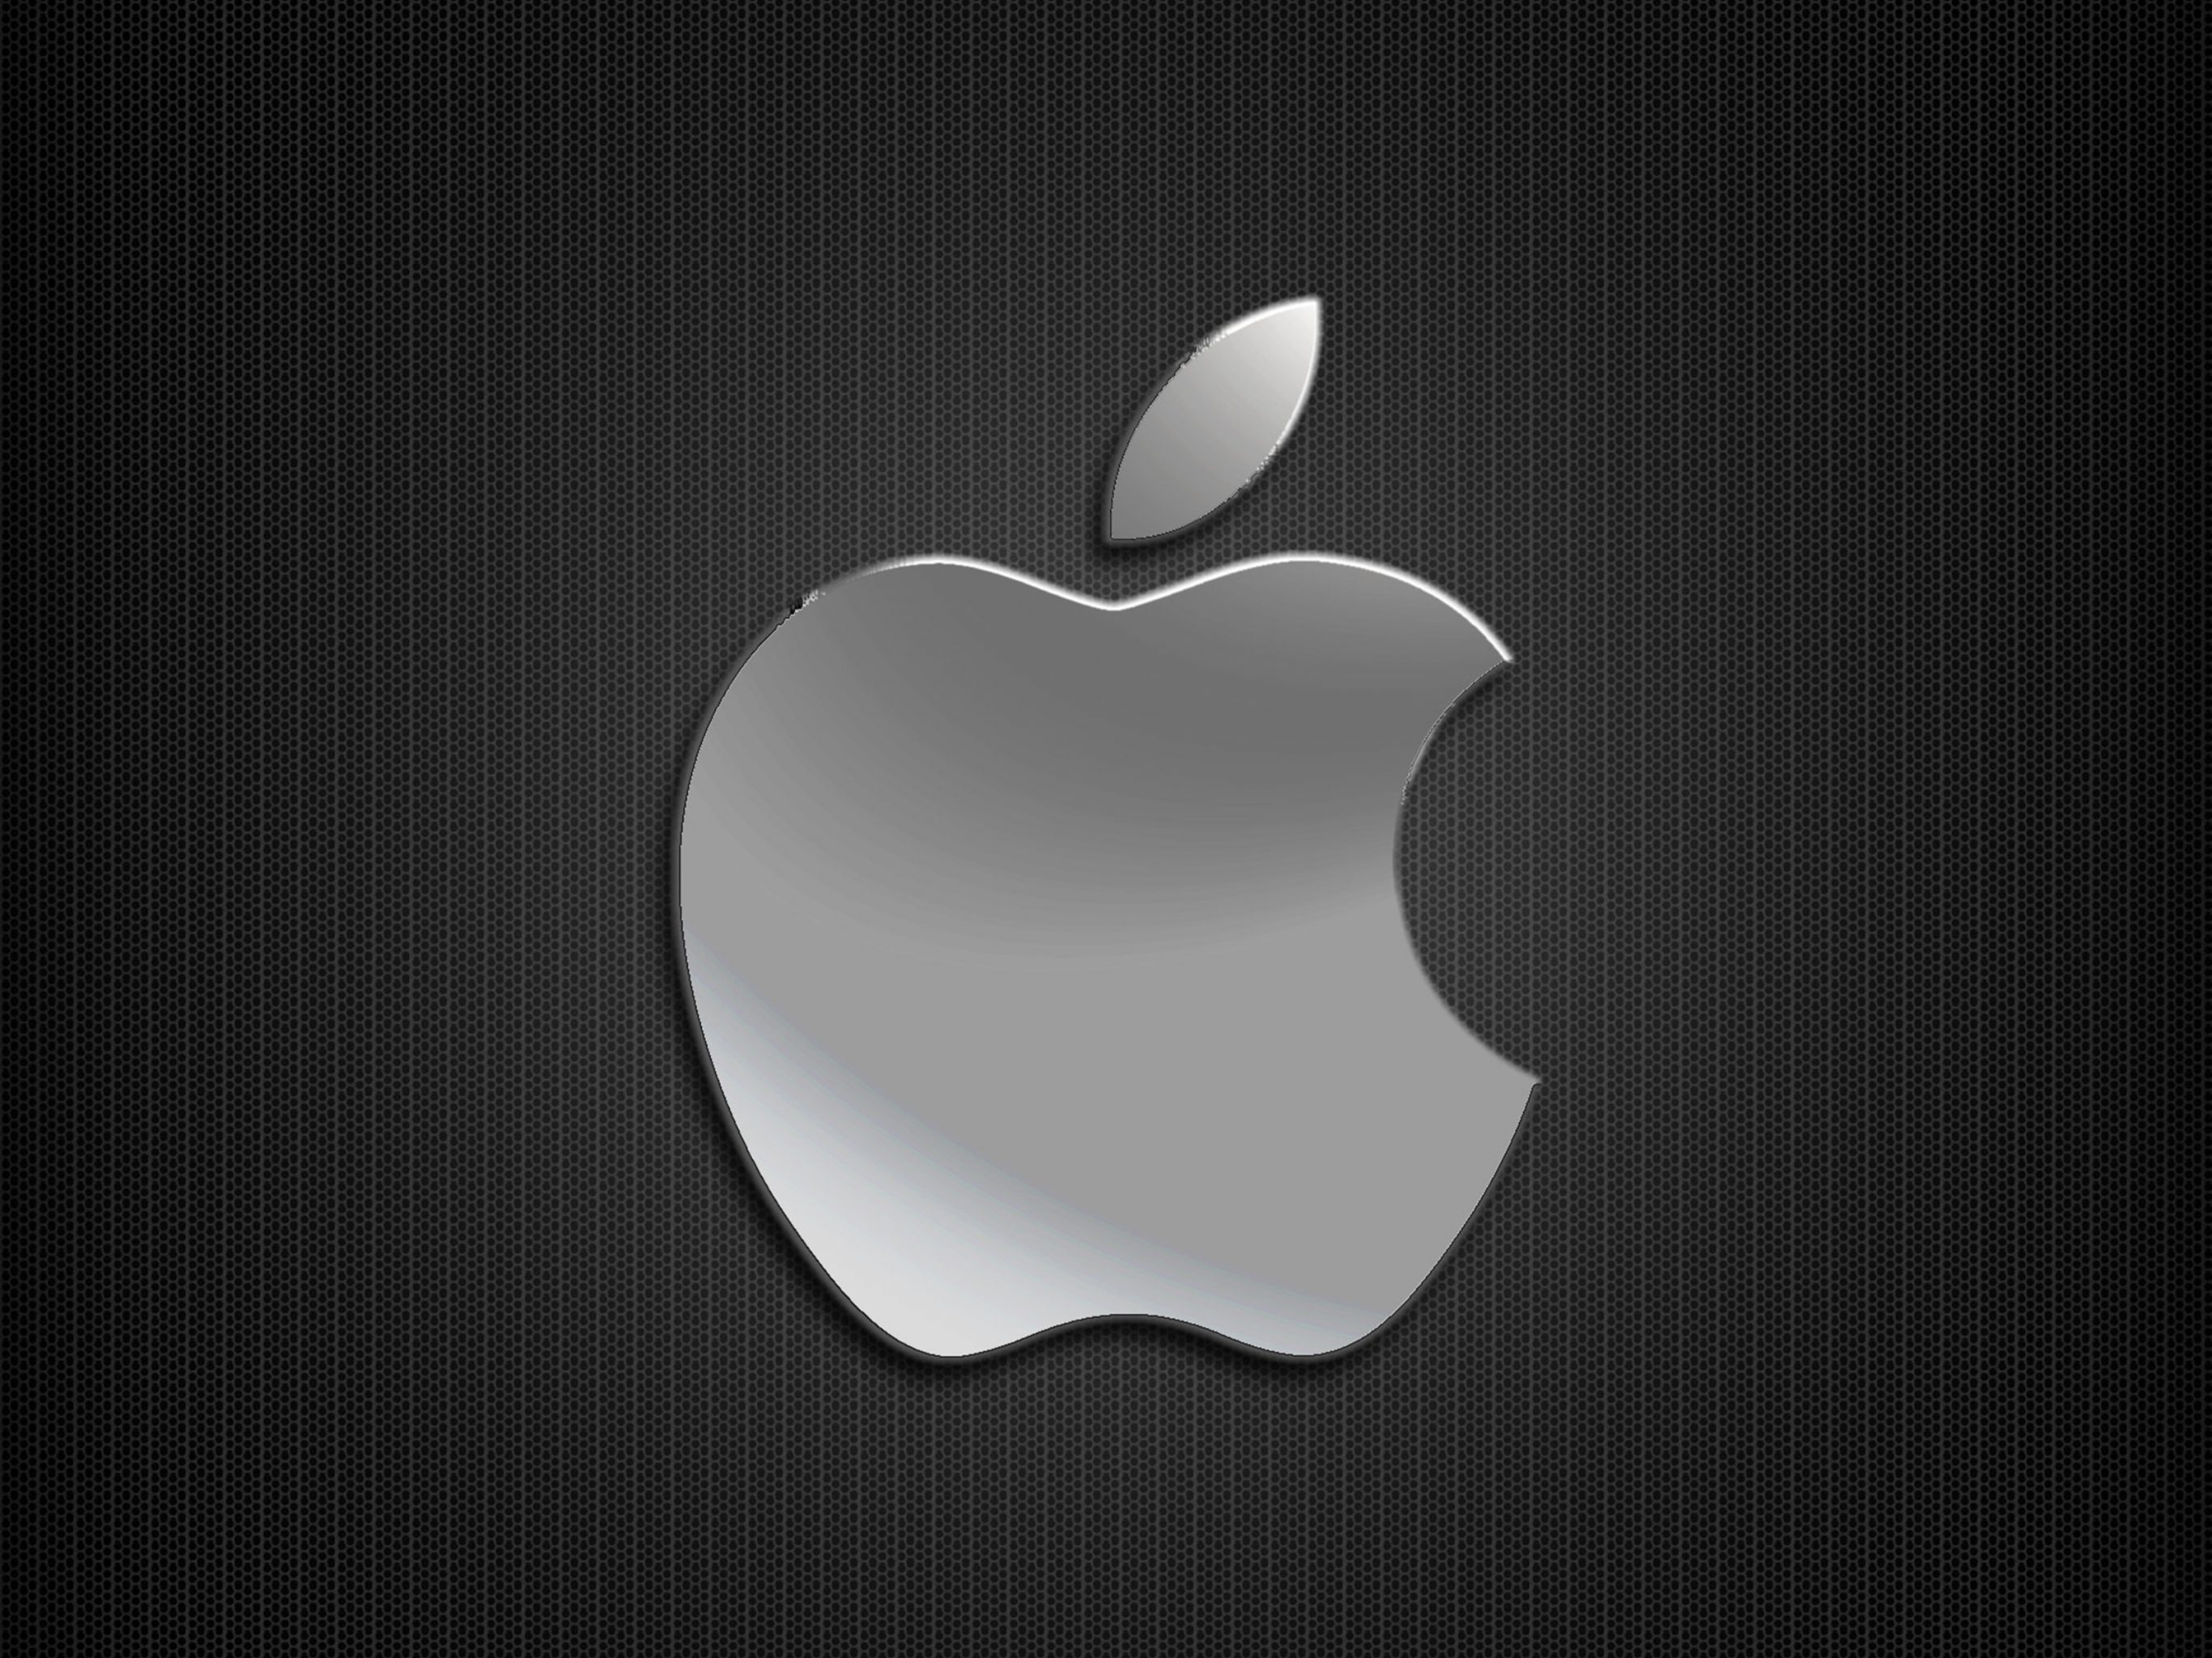 Найти картинку айфона. Эпл яблоко айфон. Заставка на айфон. Логотип Apple. Обои Apple.